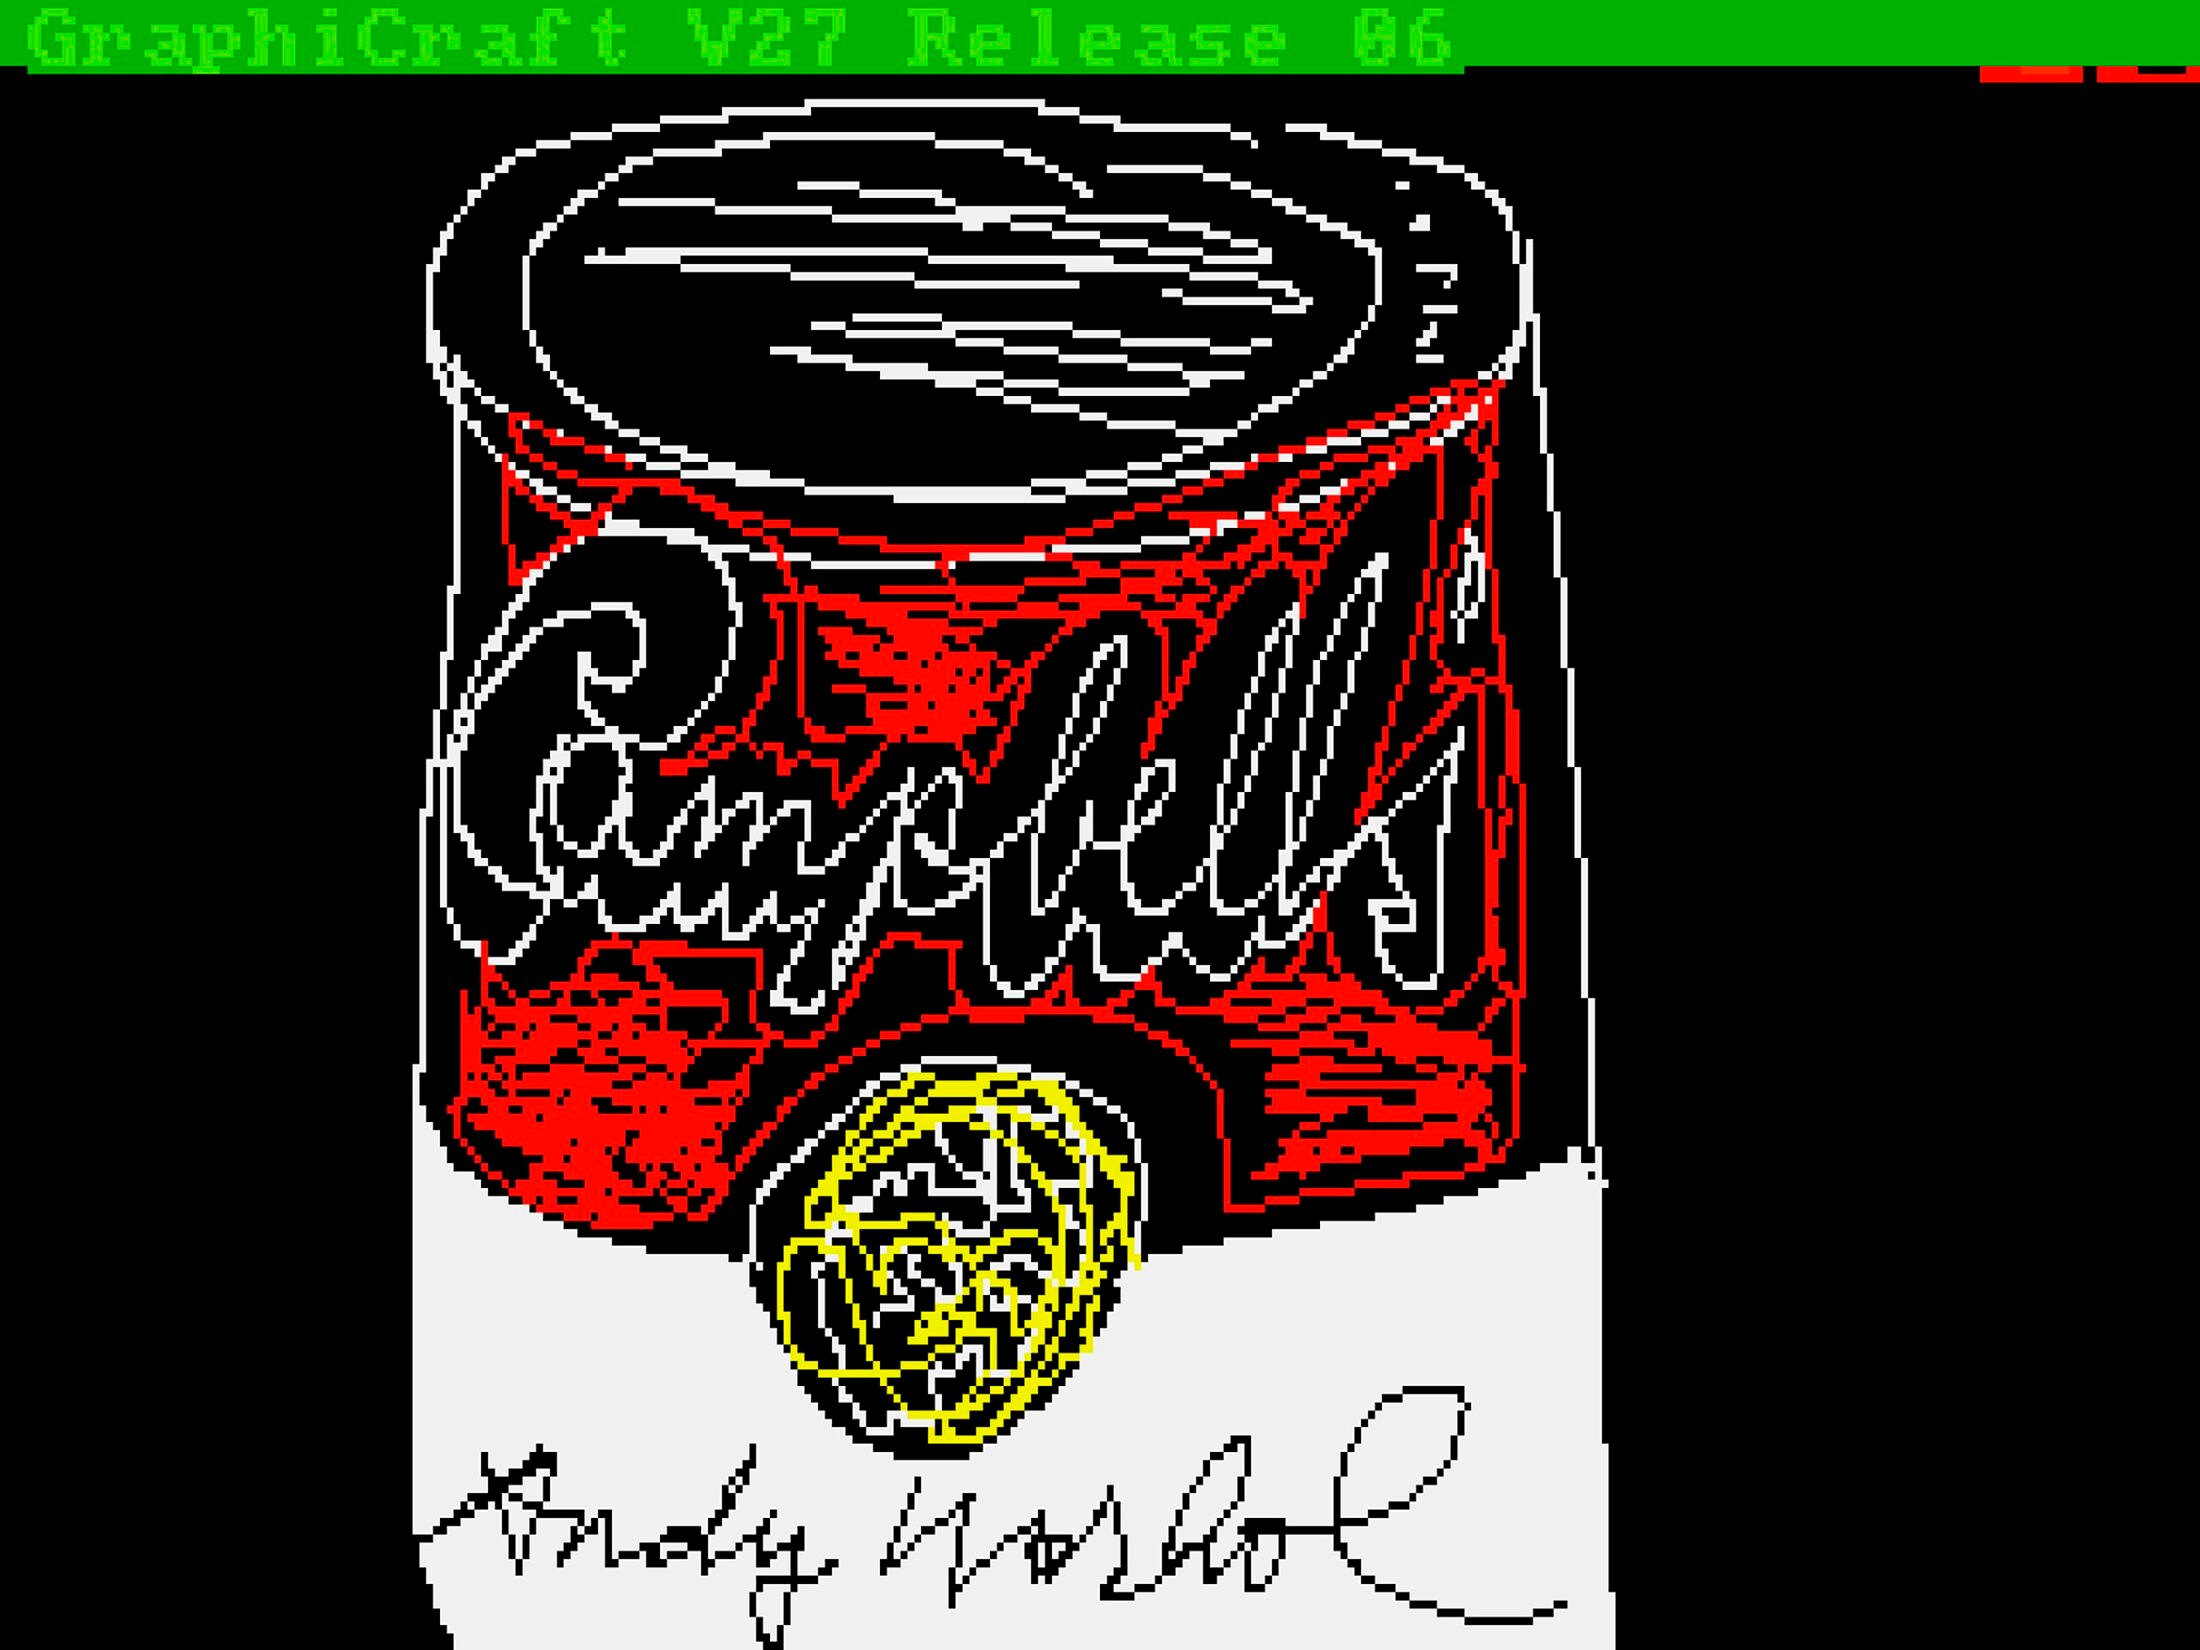 Onbekend werk van Andy Warhol op diskette gevonden